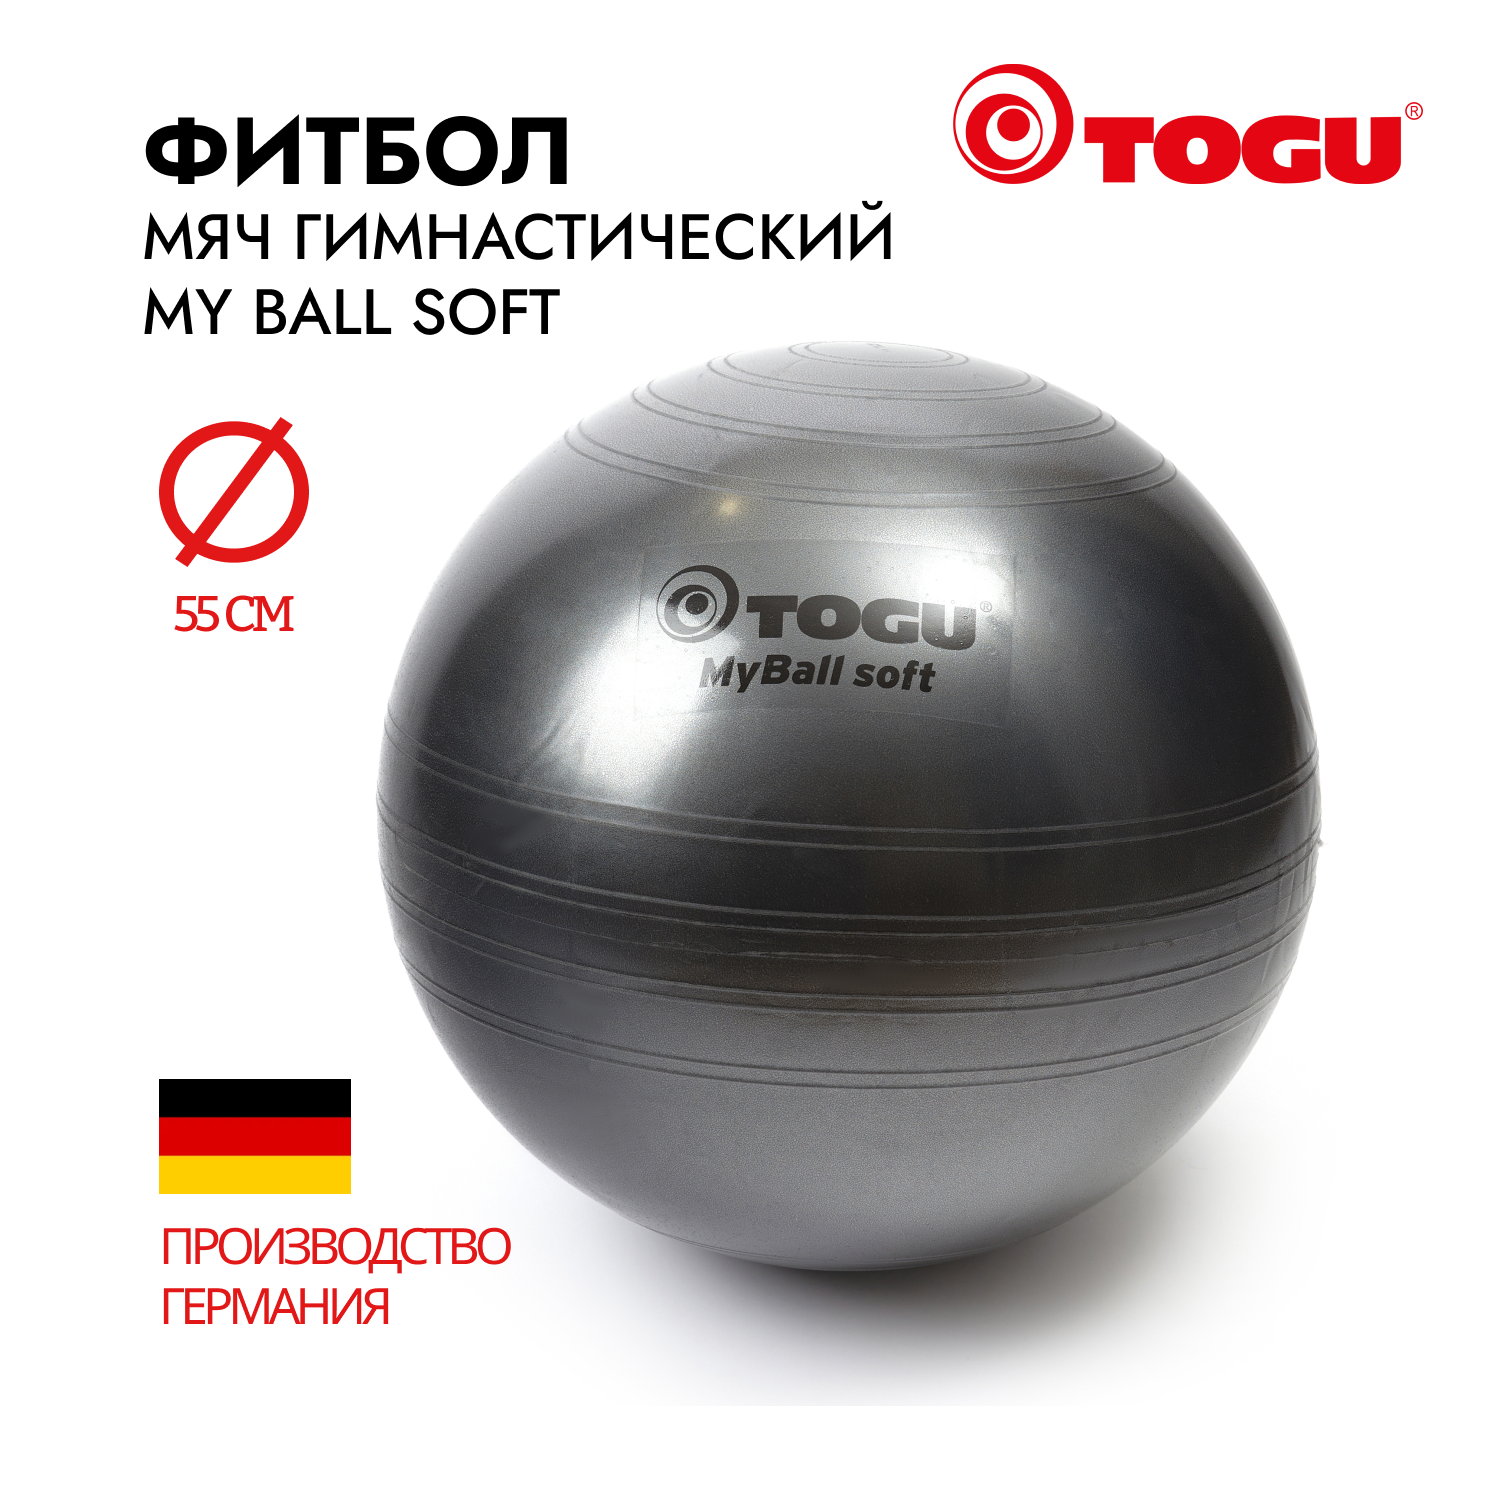 Мяч надувной спортивный/ Фитбол гимнастический TOGU My Ball Soft, диаметр 55 cм, черный перламутр